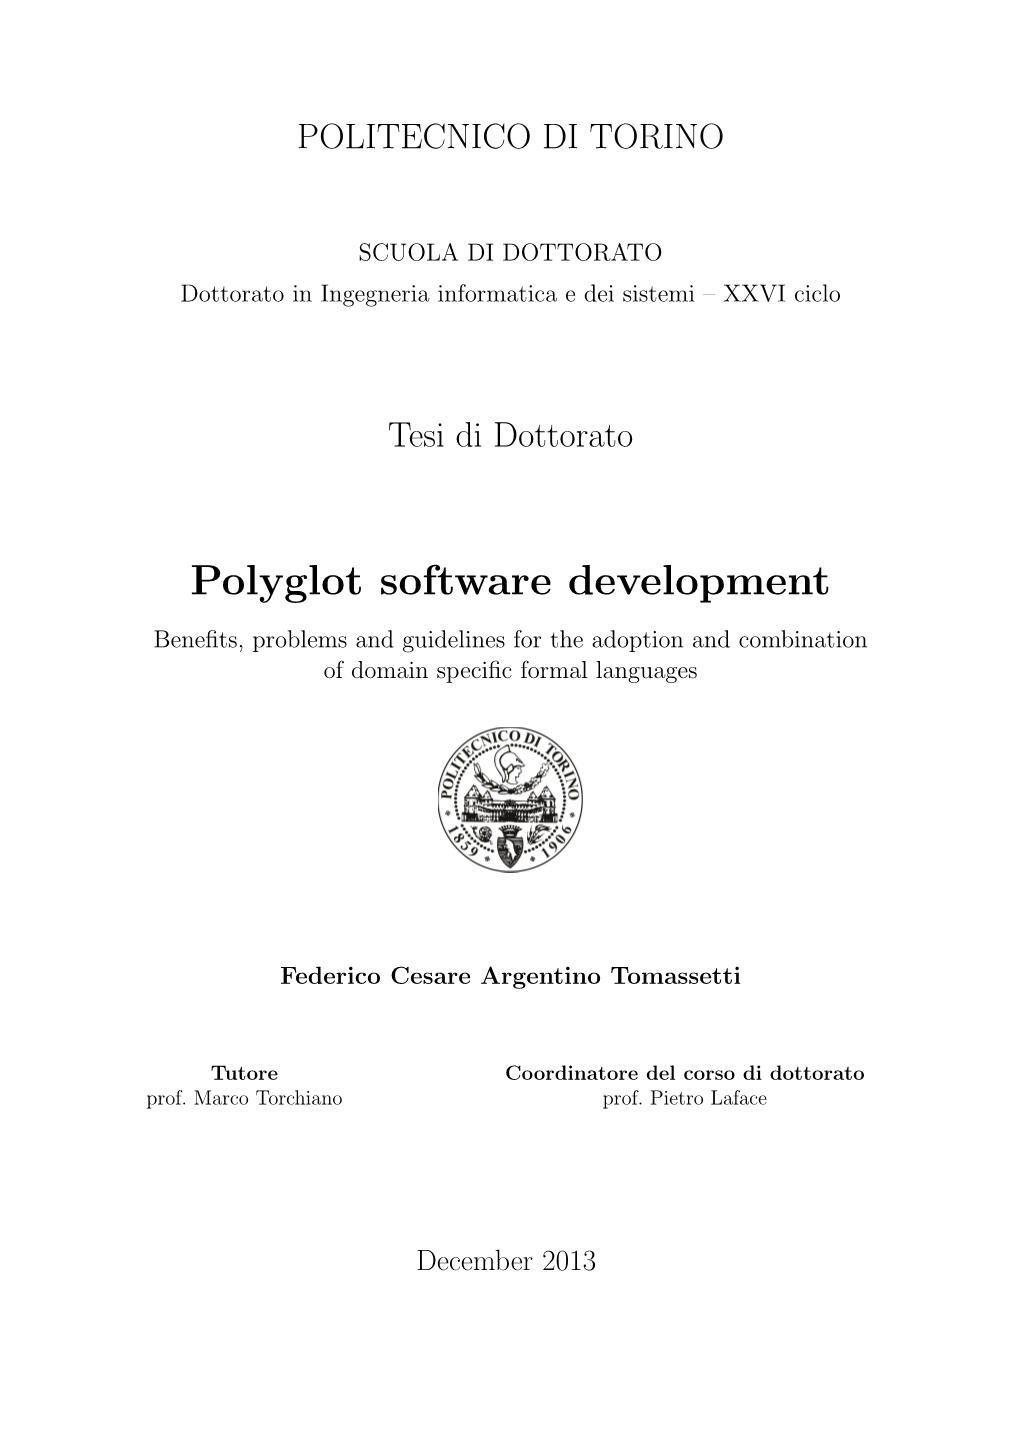 Polyglot Software Development